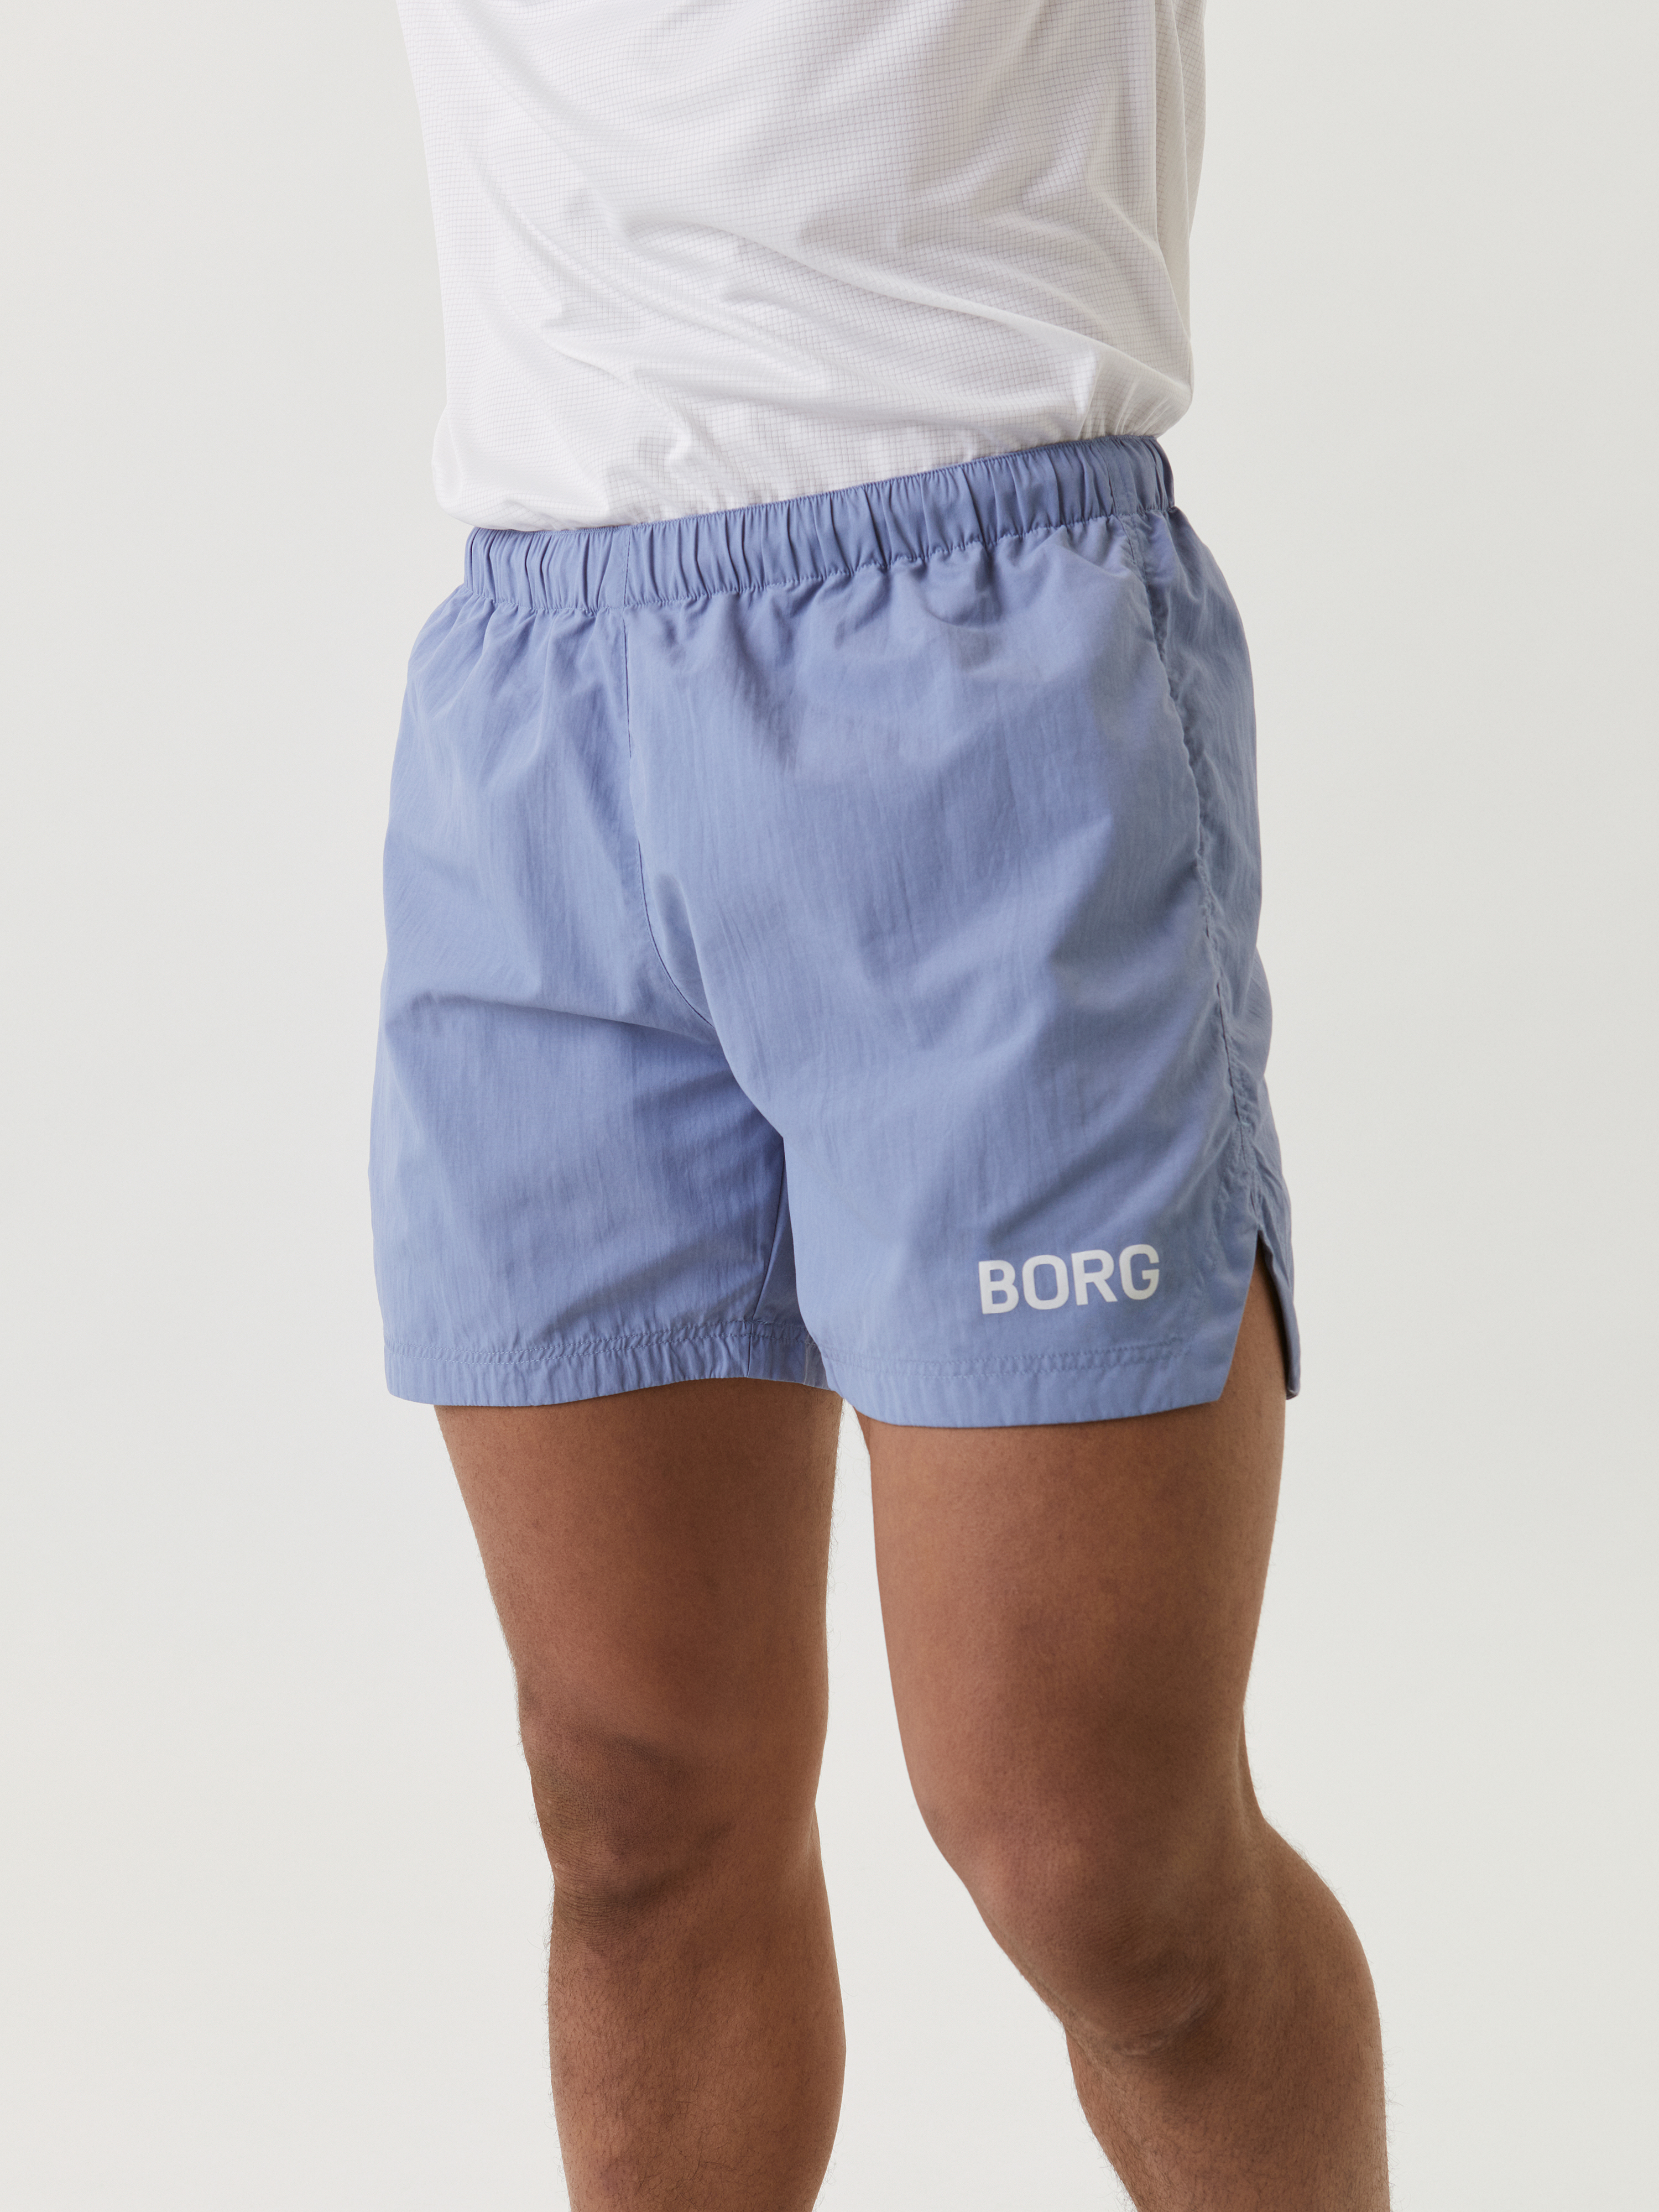 Borg Training Shorts - Stonewash | Men | Björn Borg